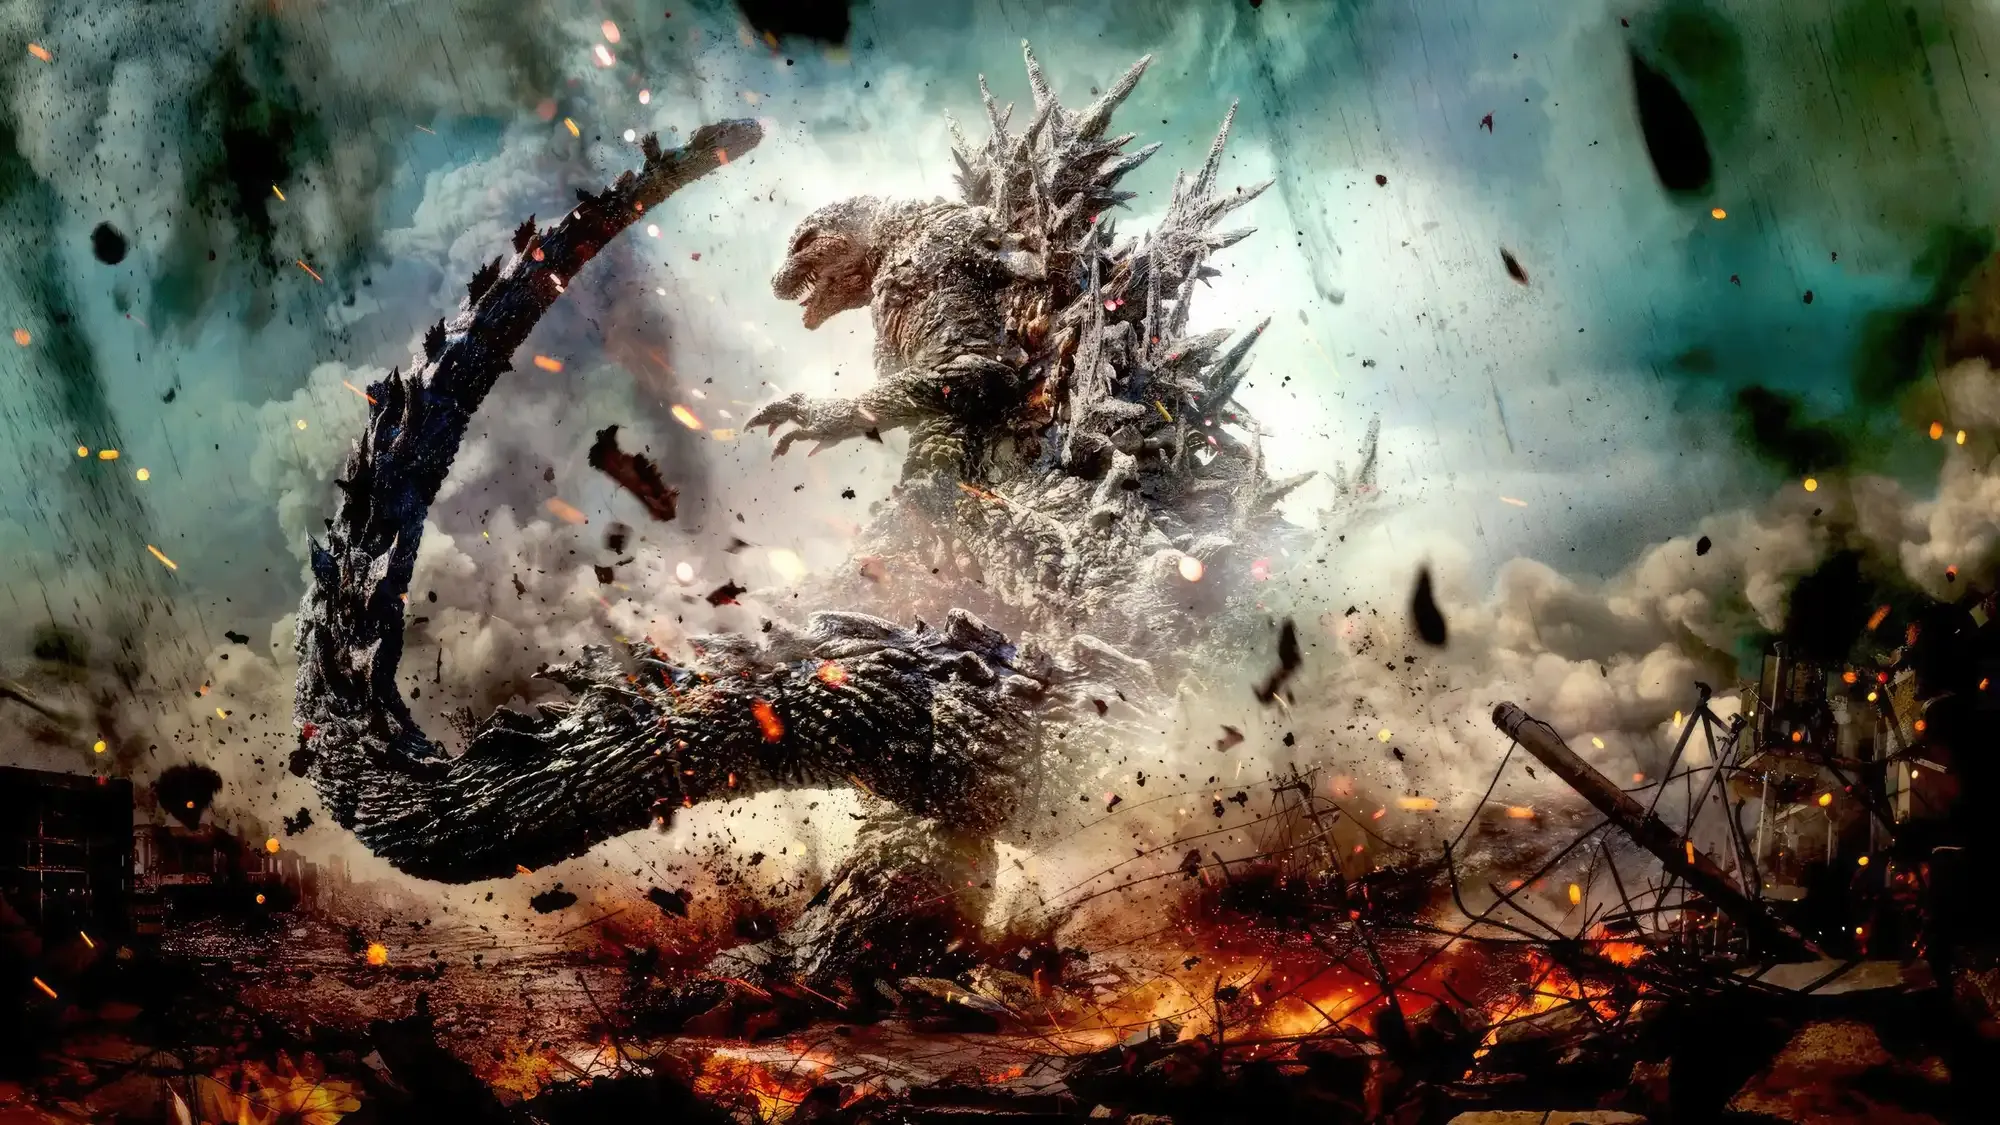 Godzilla Minus One movie review